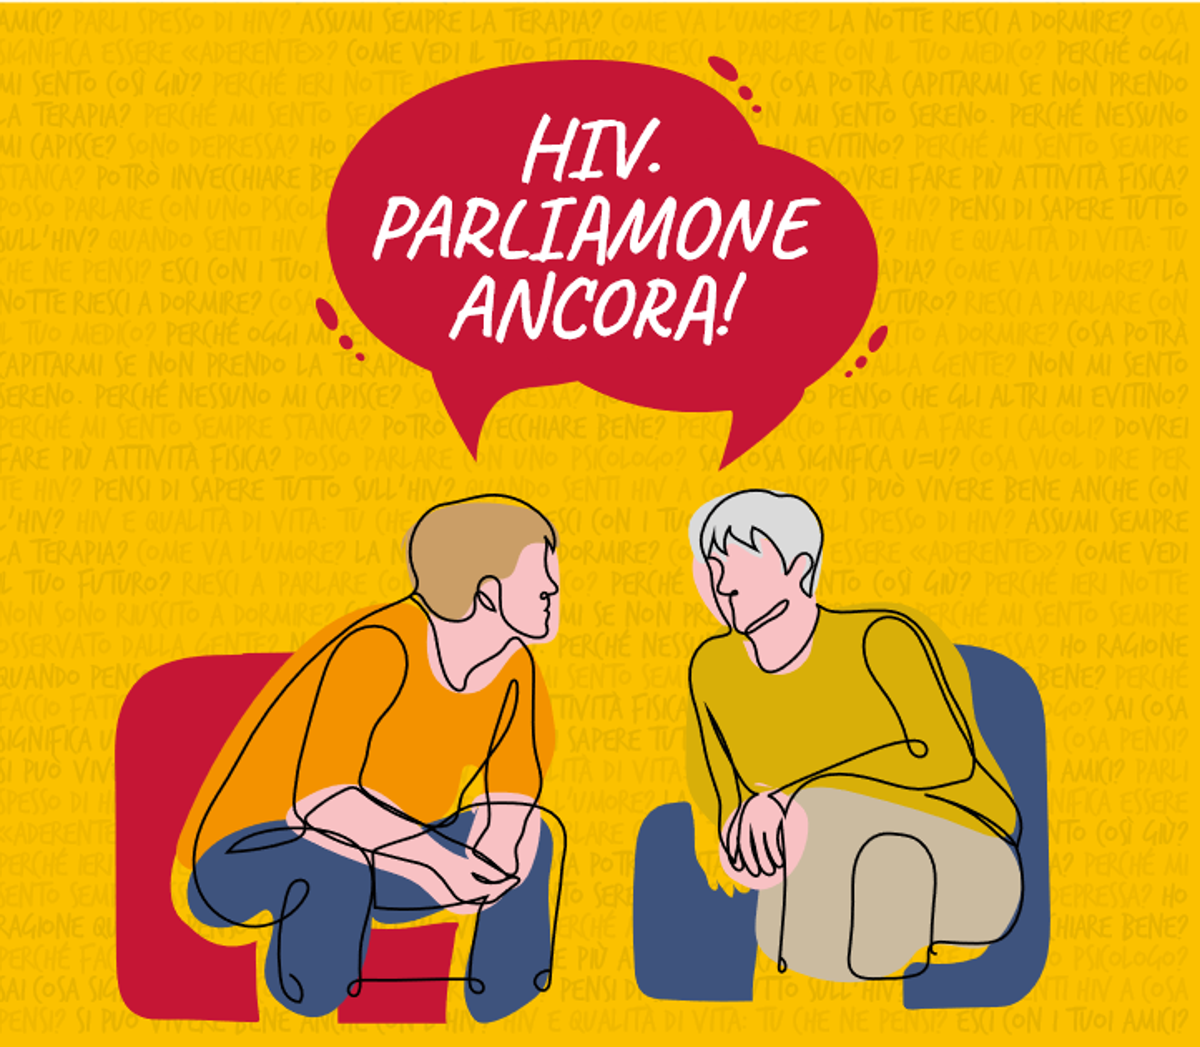 'Hiv. Parliamone ancora!', a Roma confronto e condivisione su aderenza terapeutica e resistenza